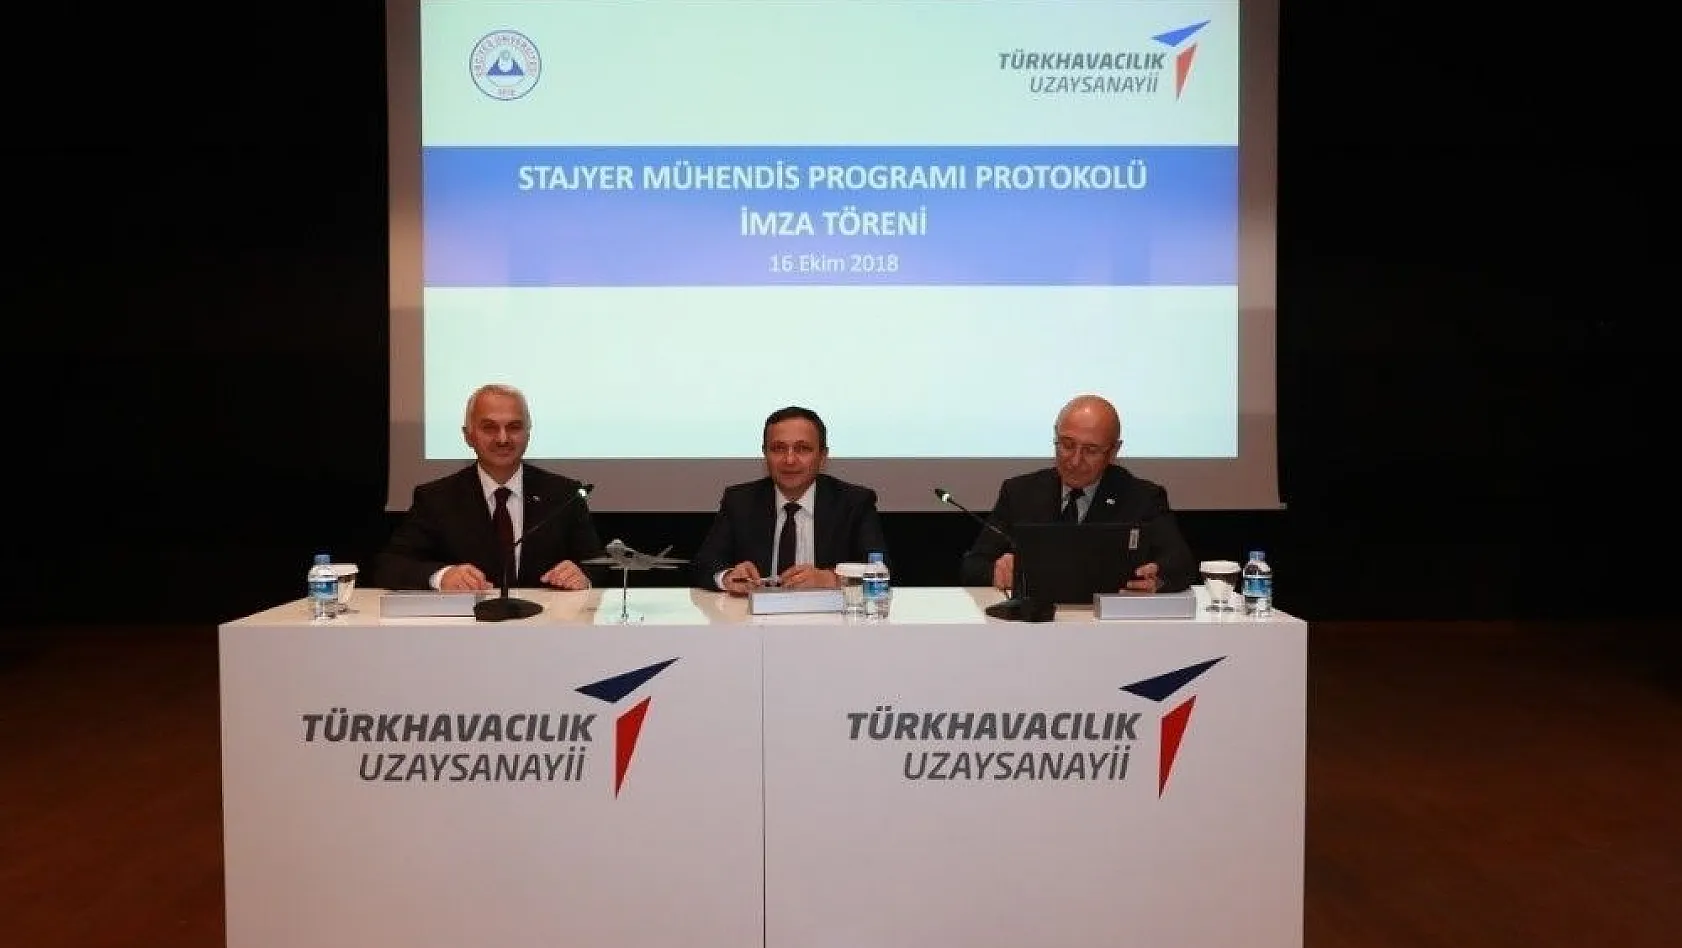 ERÜ ile ve TUSAŞ arasında 'Stajyer Mühendis' protokolü imzalandı
